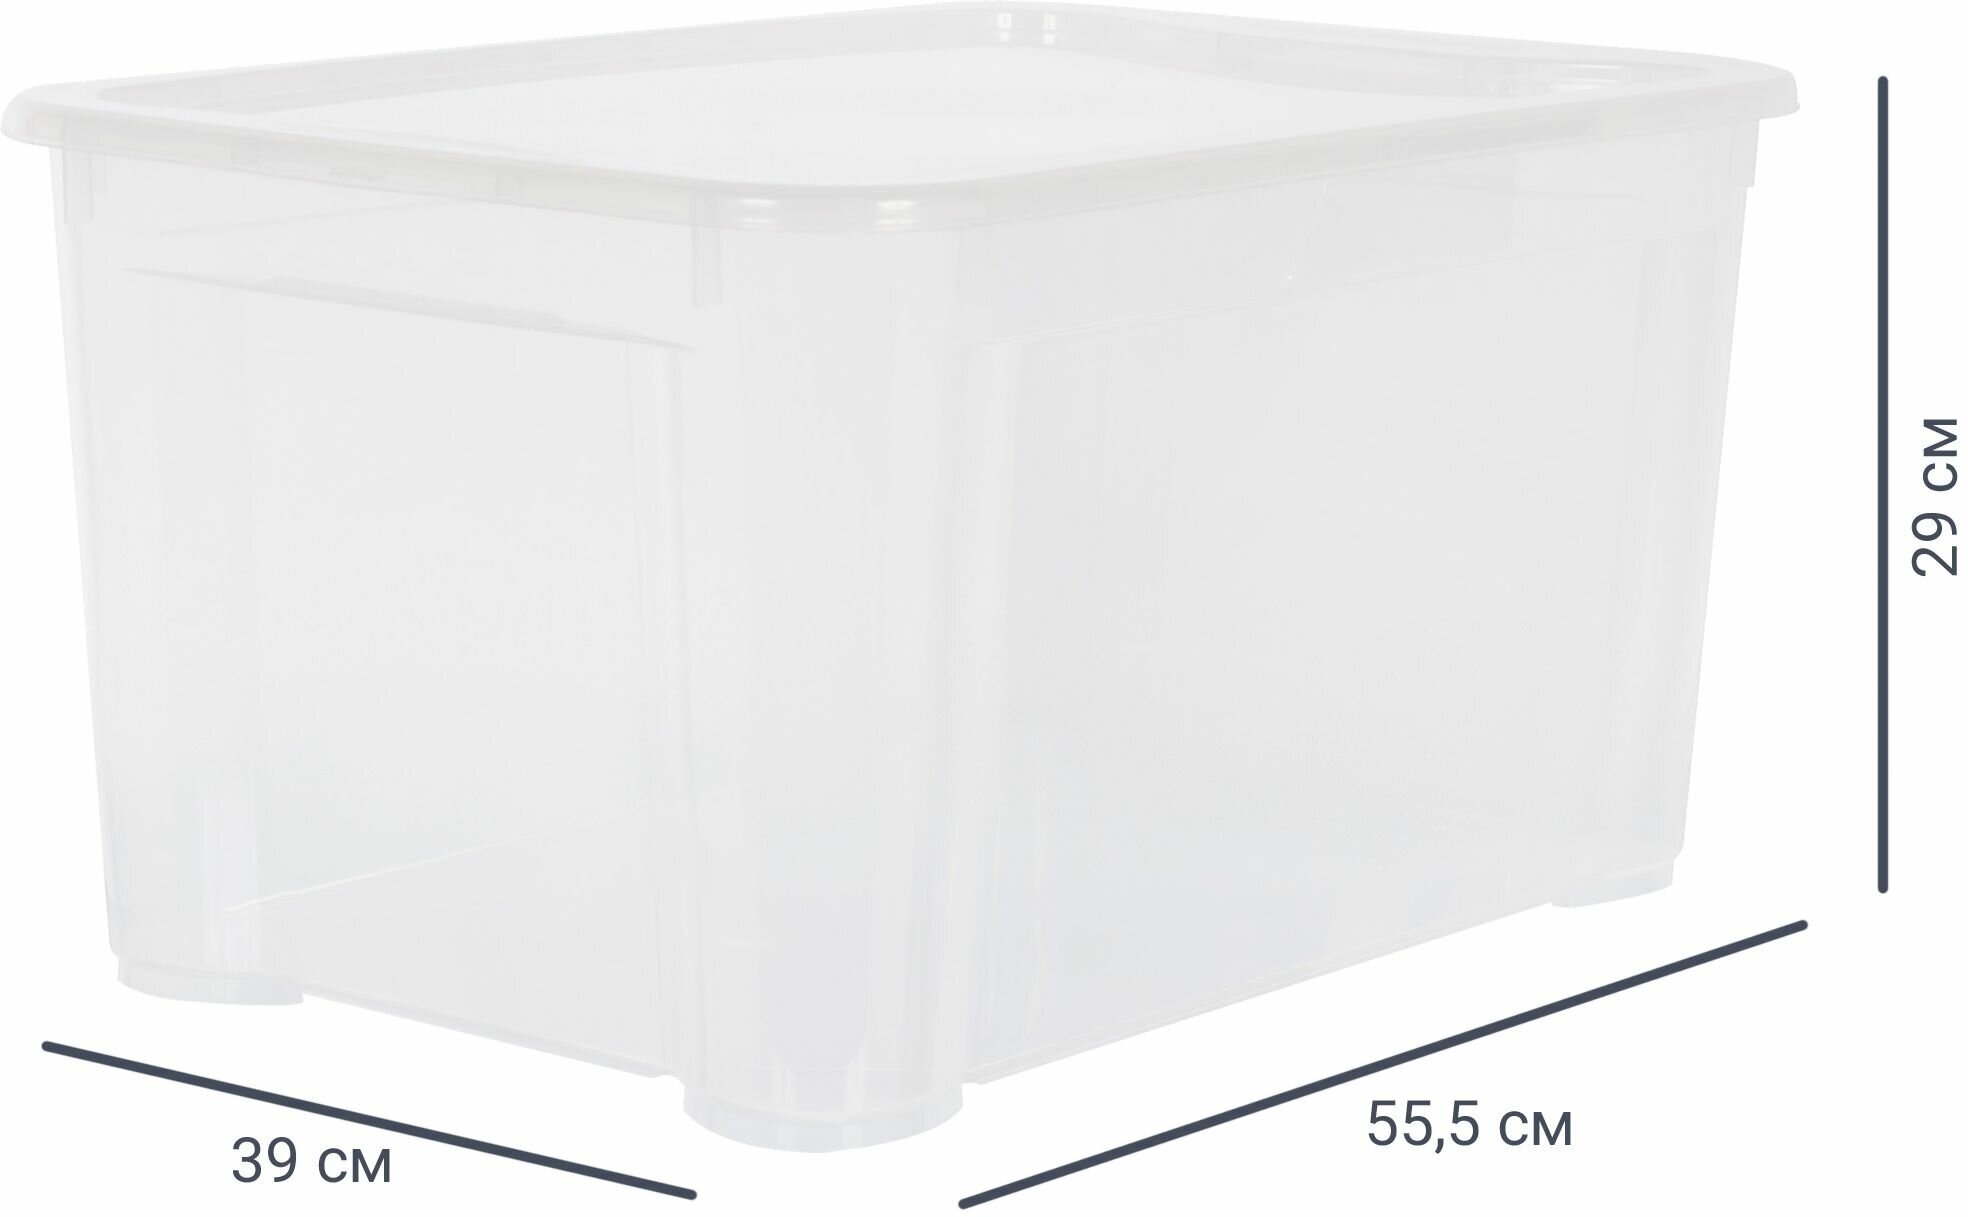 Ящик Кристалл 55.5x39x29 см пластик с крышкой цвет прозрачный